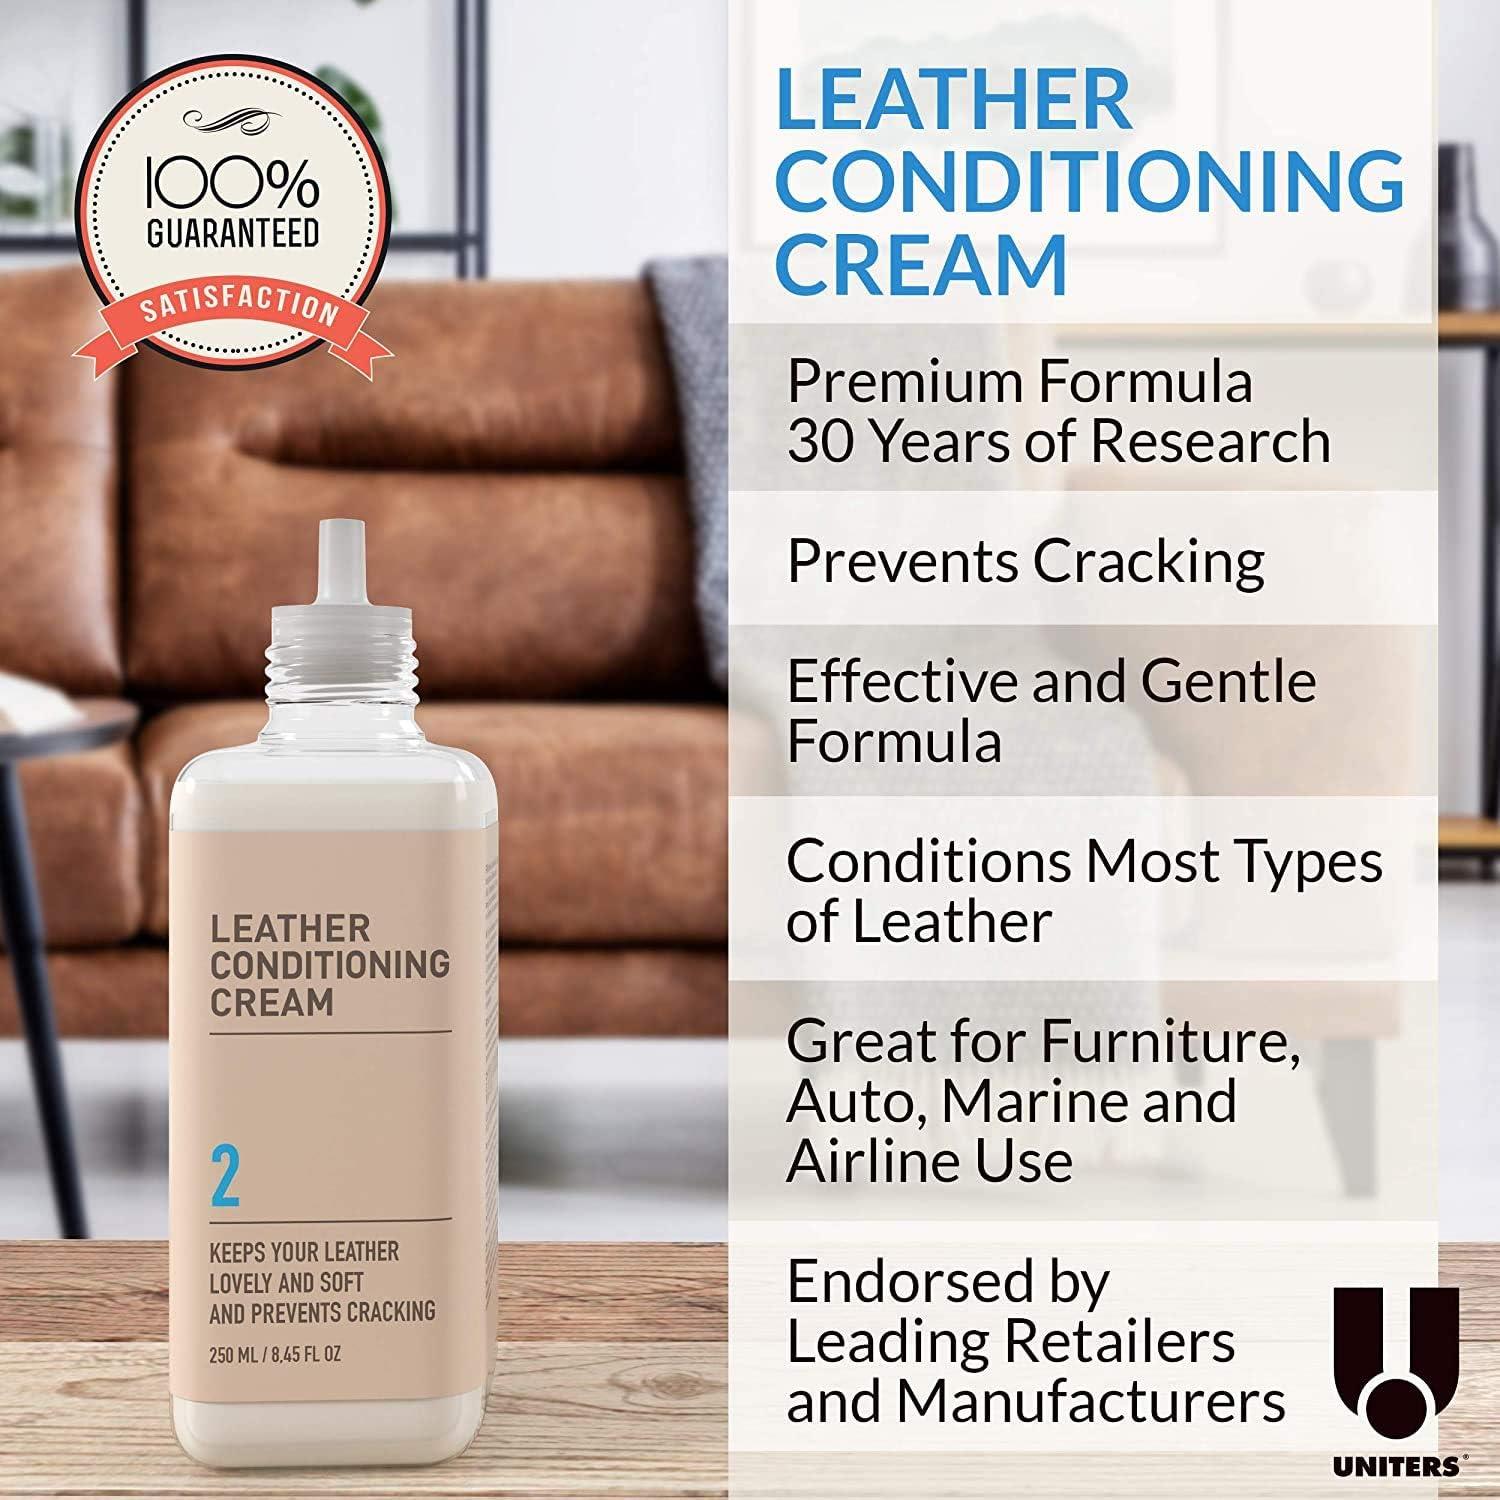 Premium Leather Care Cream